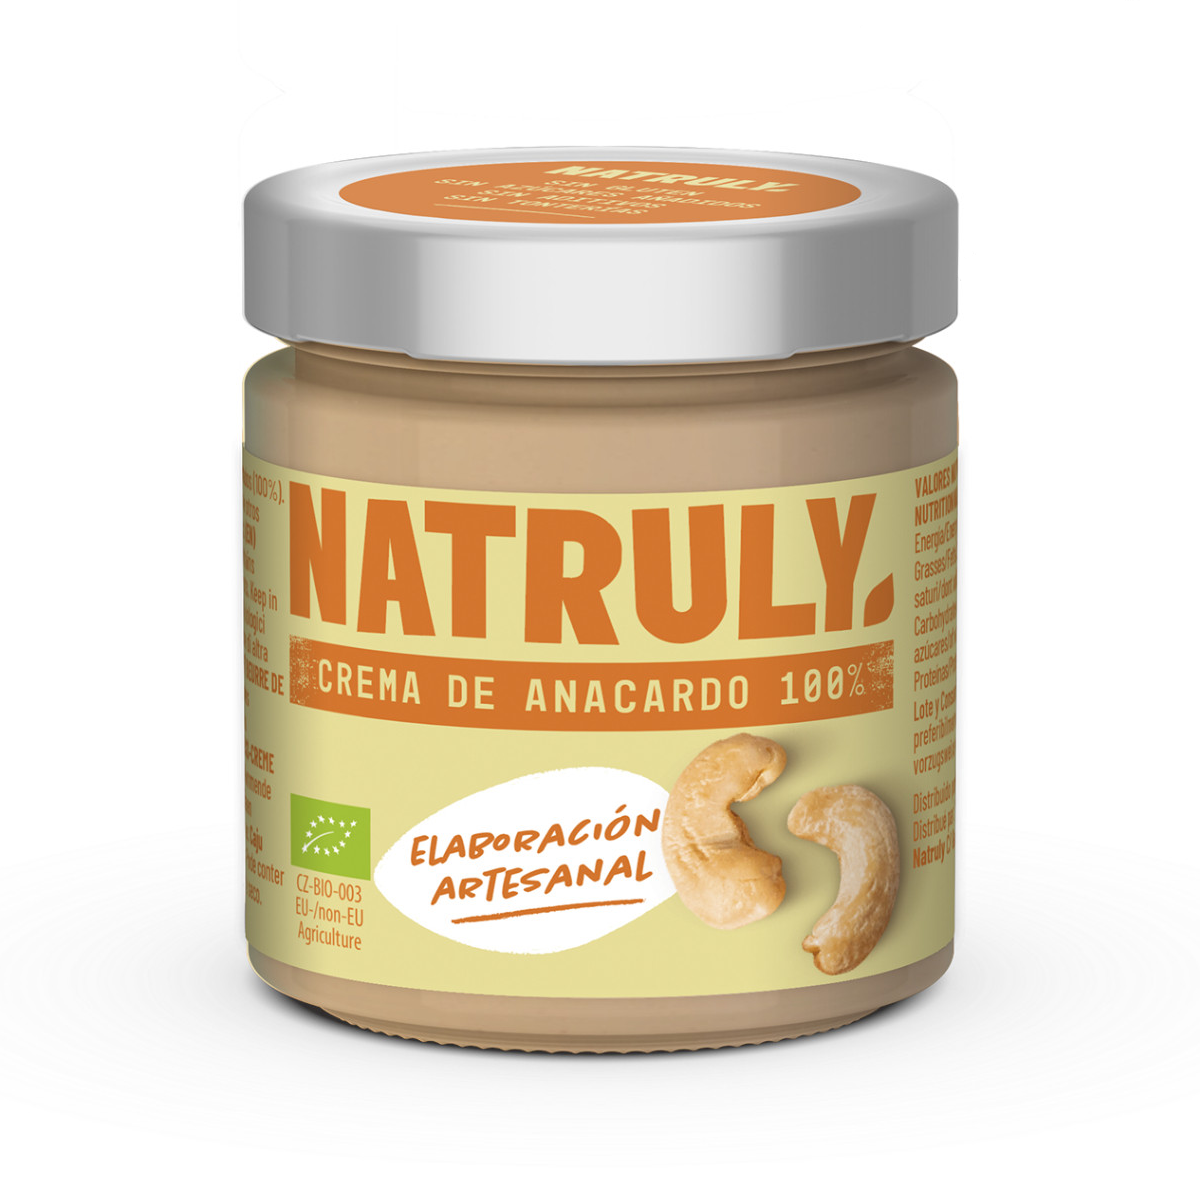 Natruly Crema de anacardos orgánica sin gluten